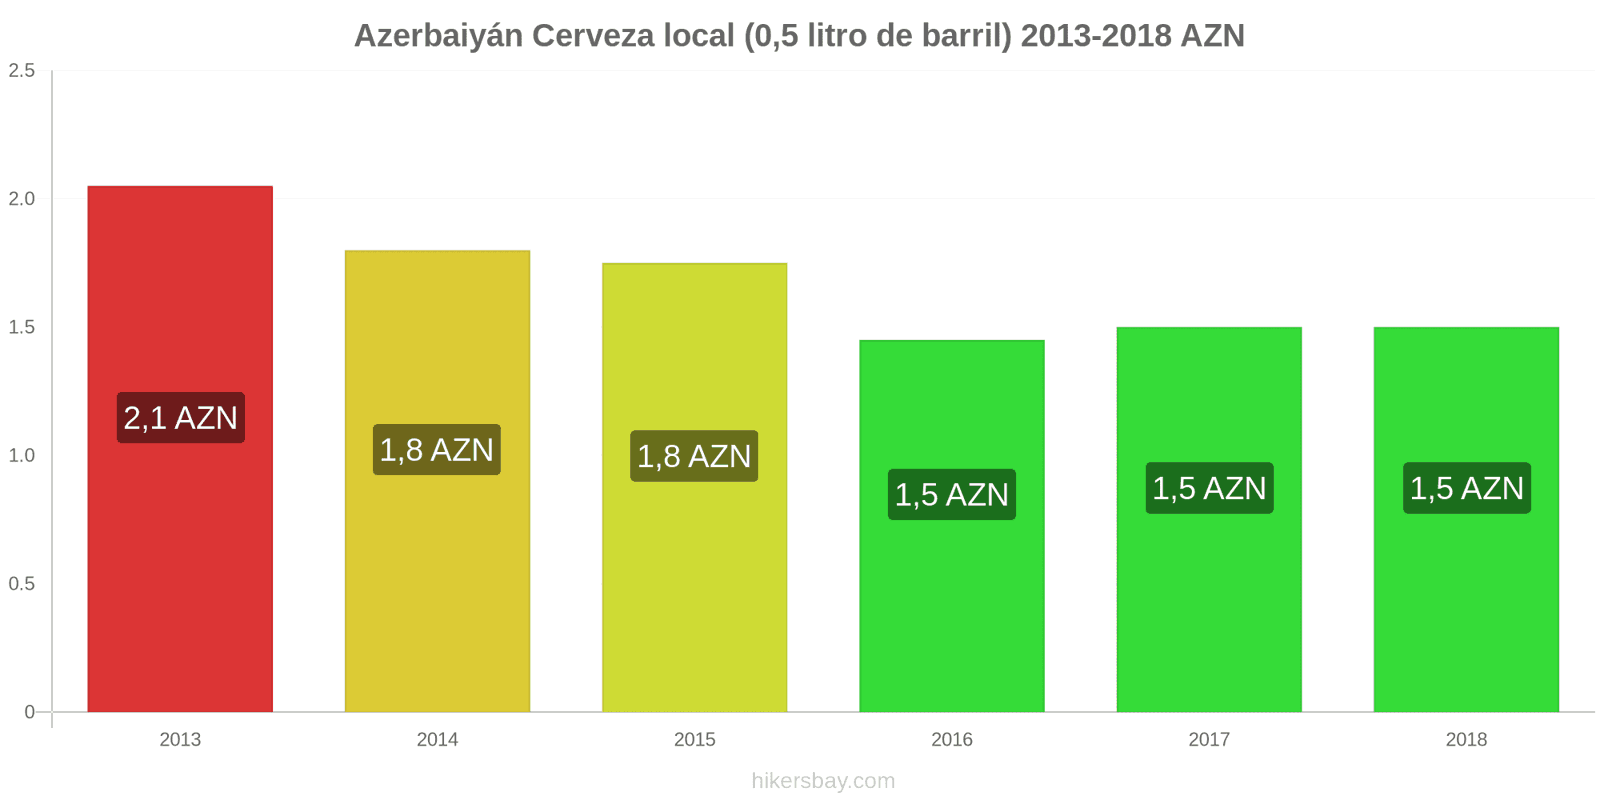 Azerbaiyán cambios de precios Cerveza de barril (0,5 litros) hikersbay.com